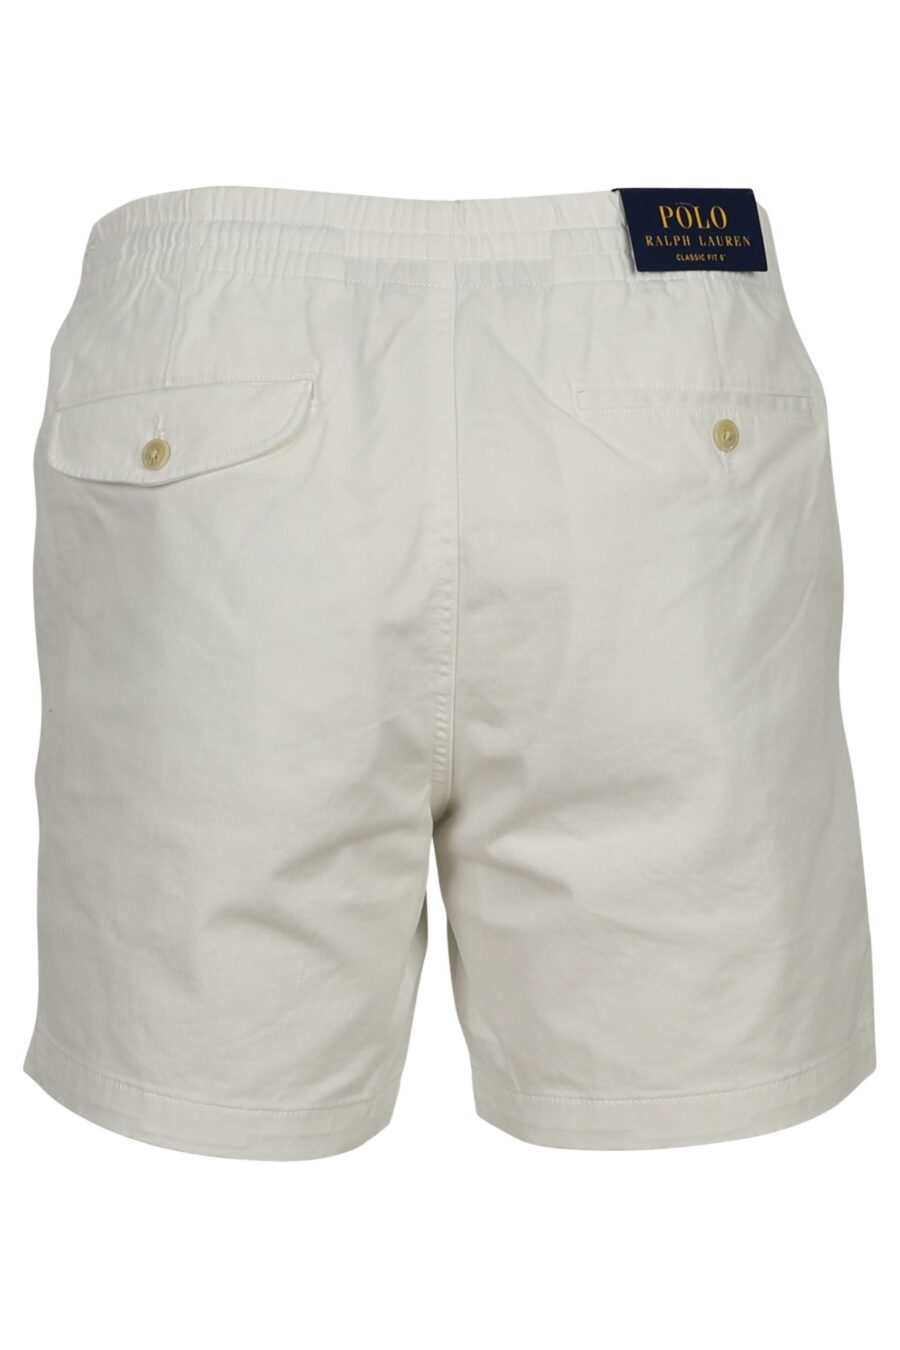 White shorts with mini-logo "polo" - 3614712774080 1